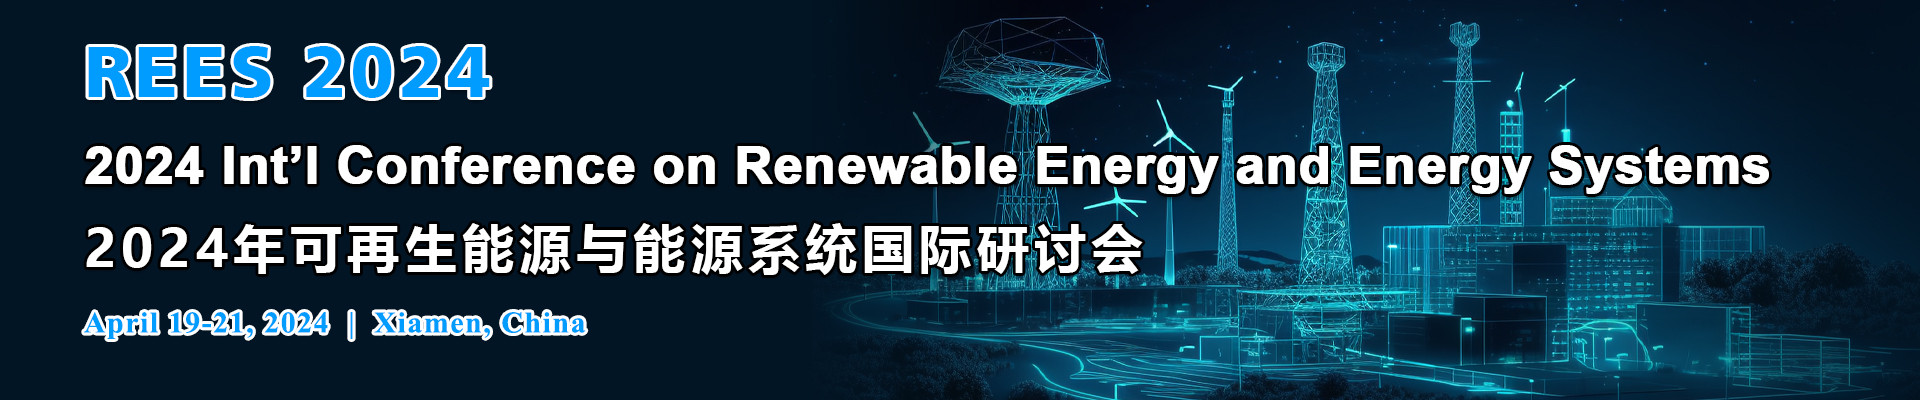 2024年可再生能源与能源系统国际研讨会(REES 2024)